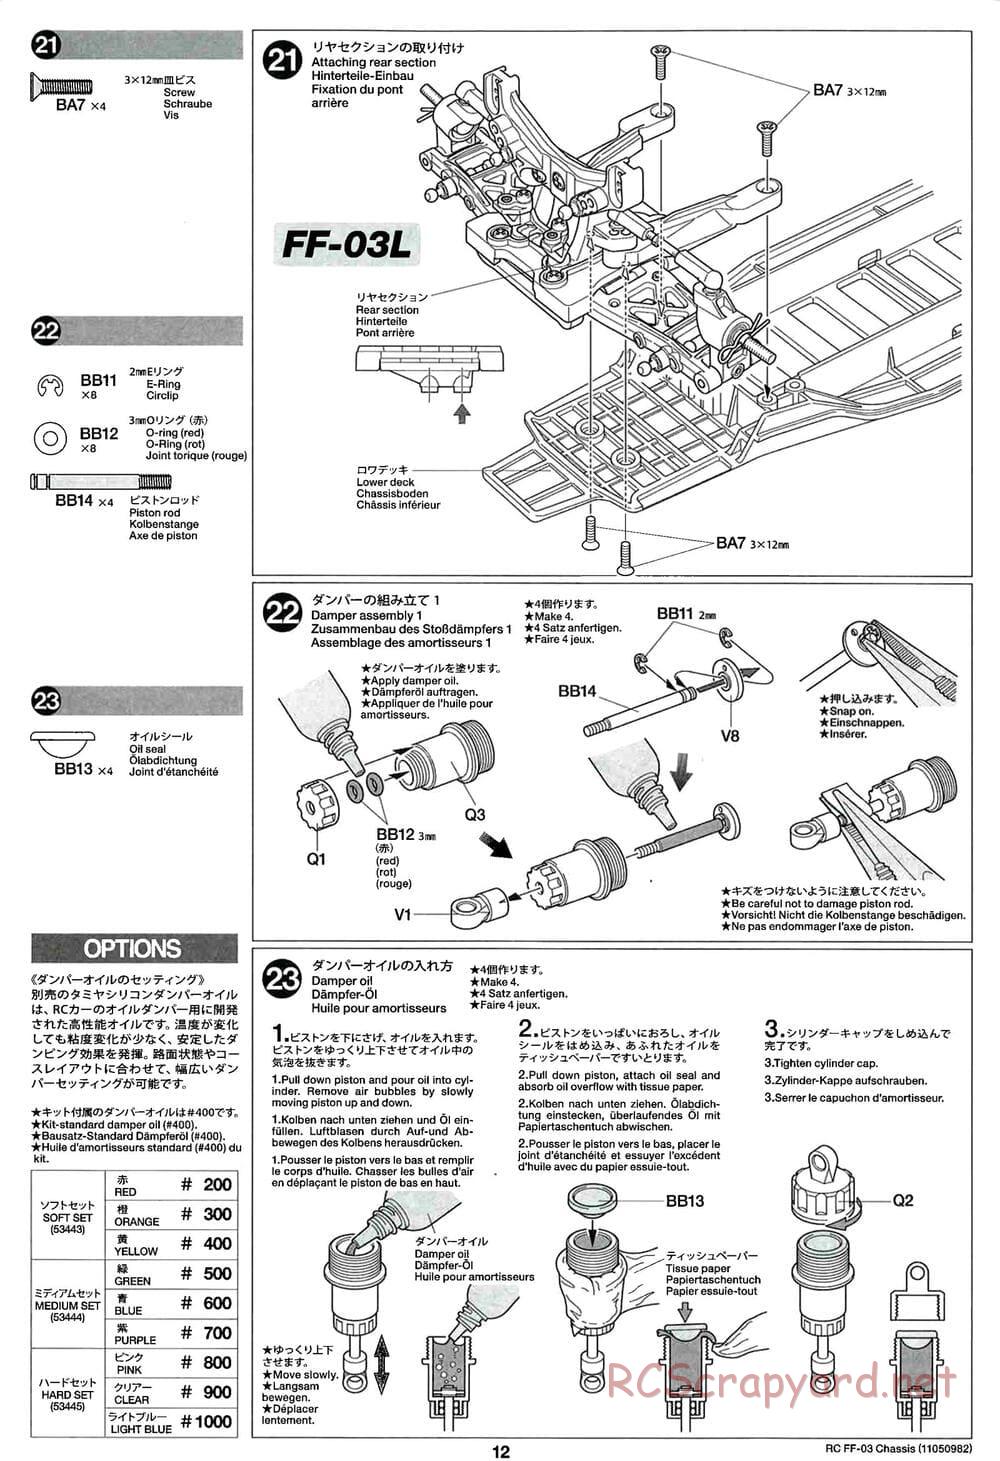 Tamiya - Honda CR-Z - FF-03 Chassis - Manual - Page 12